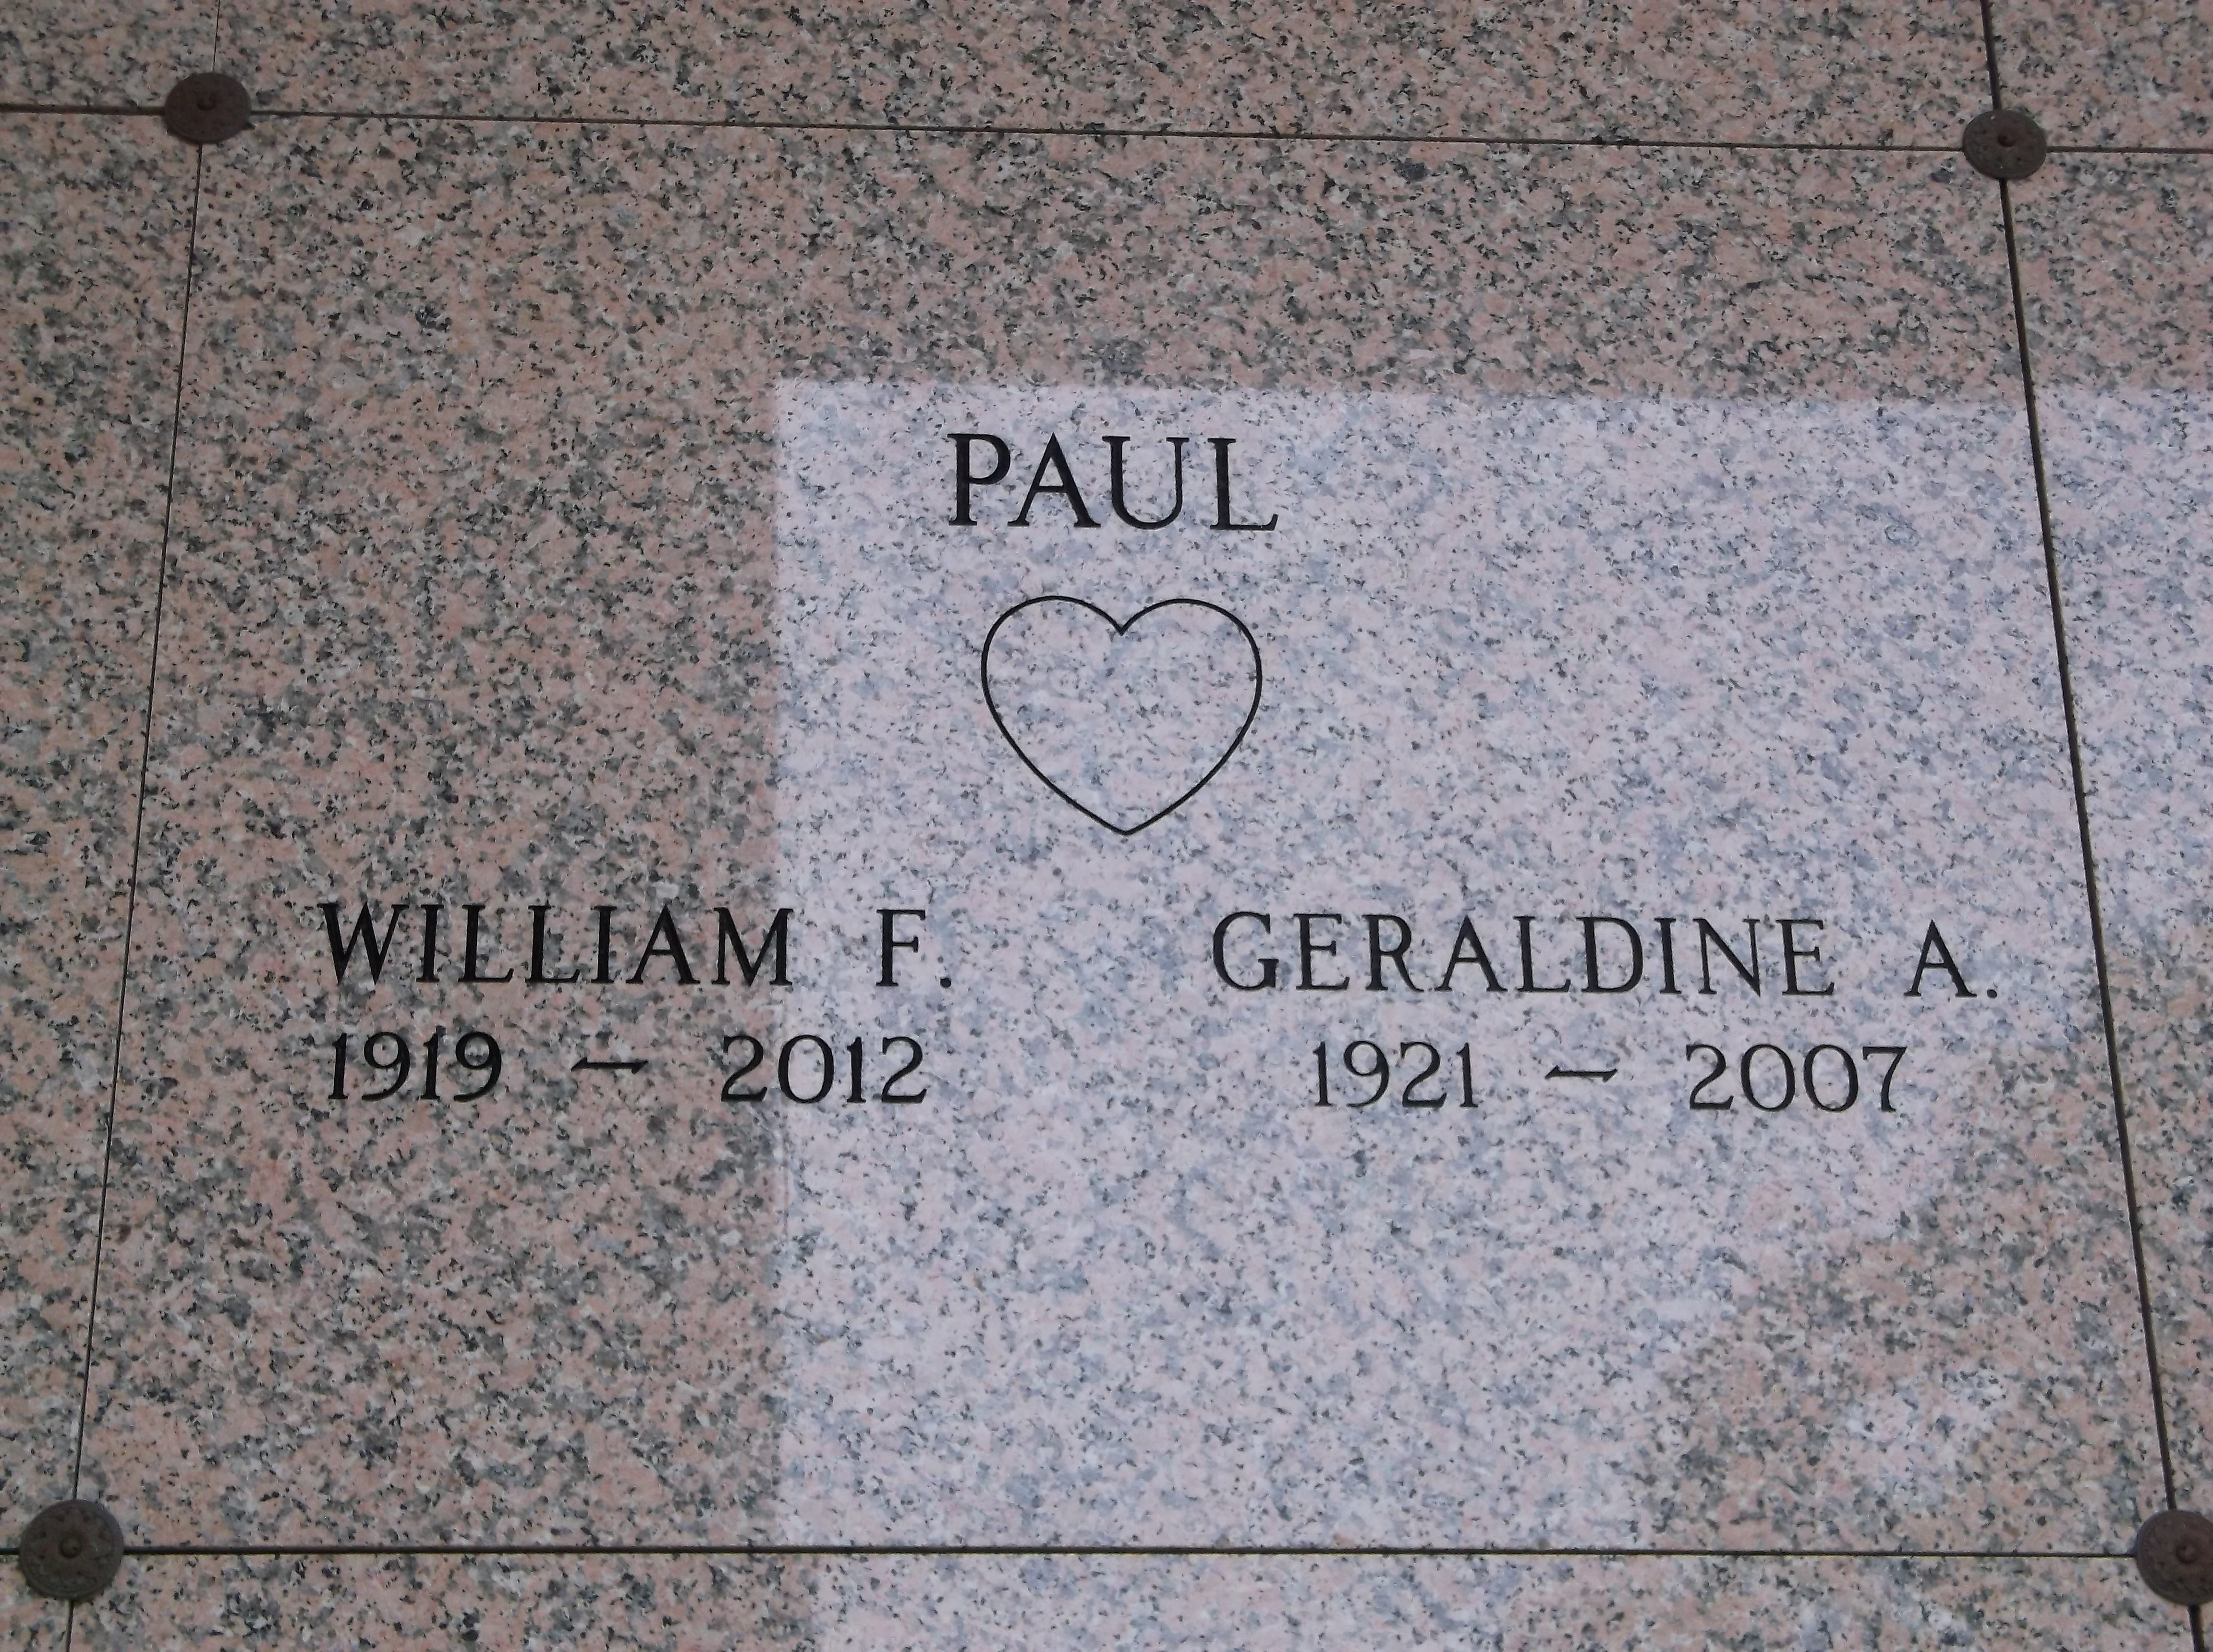 William F Paul